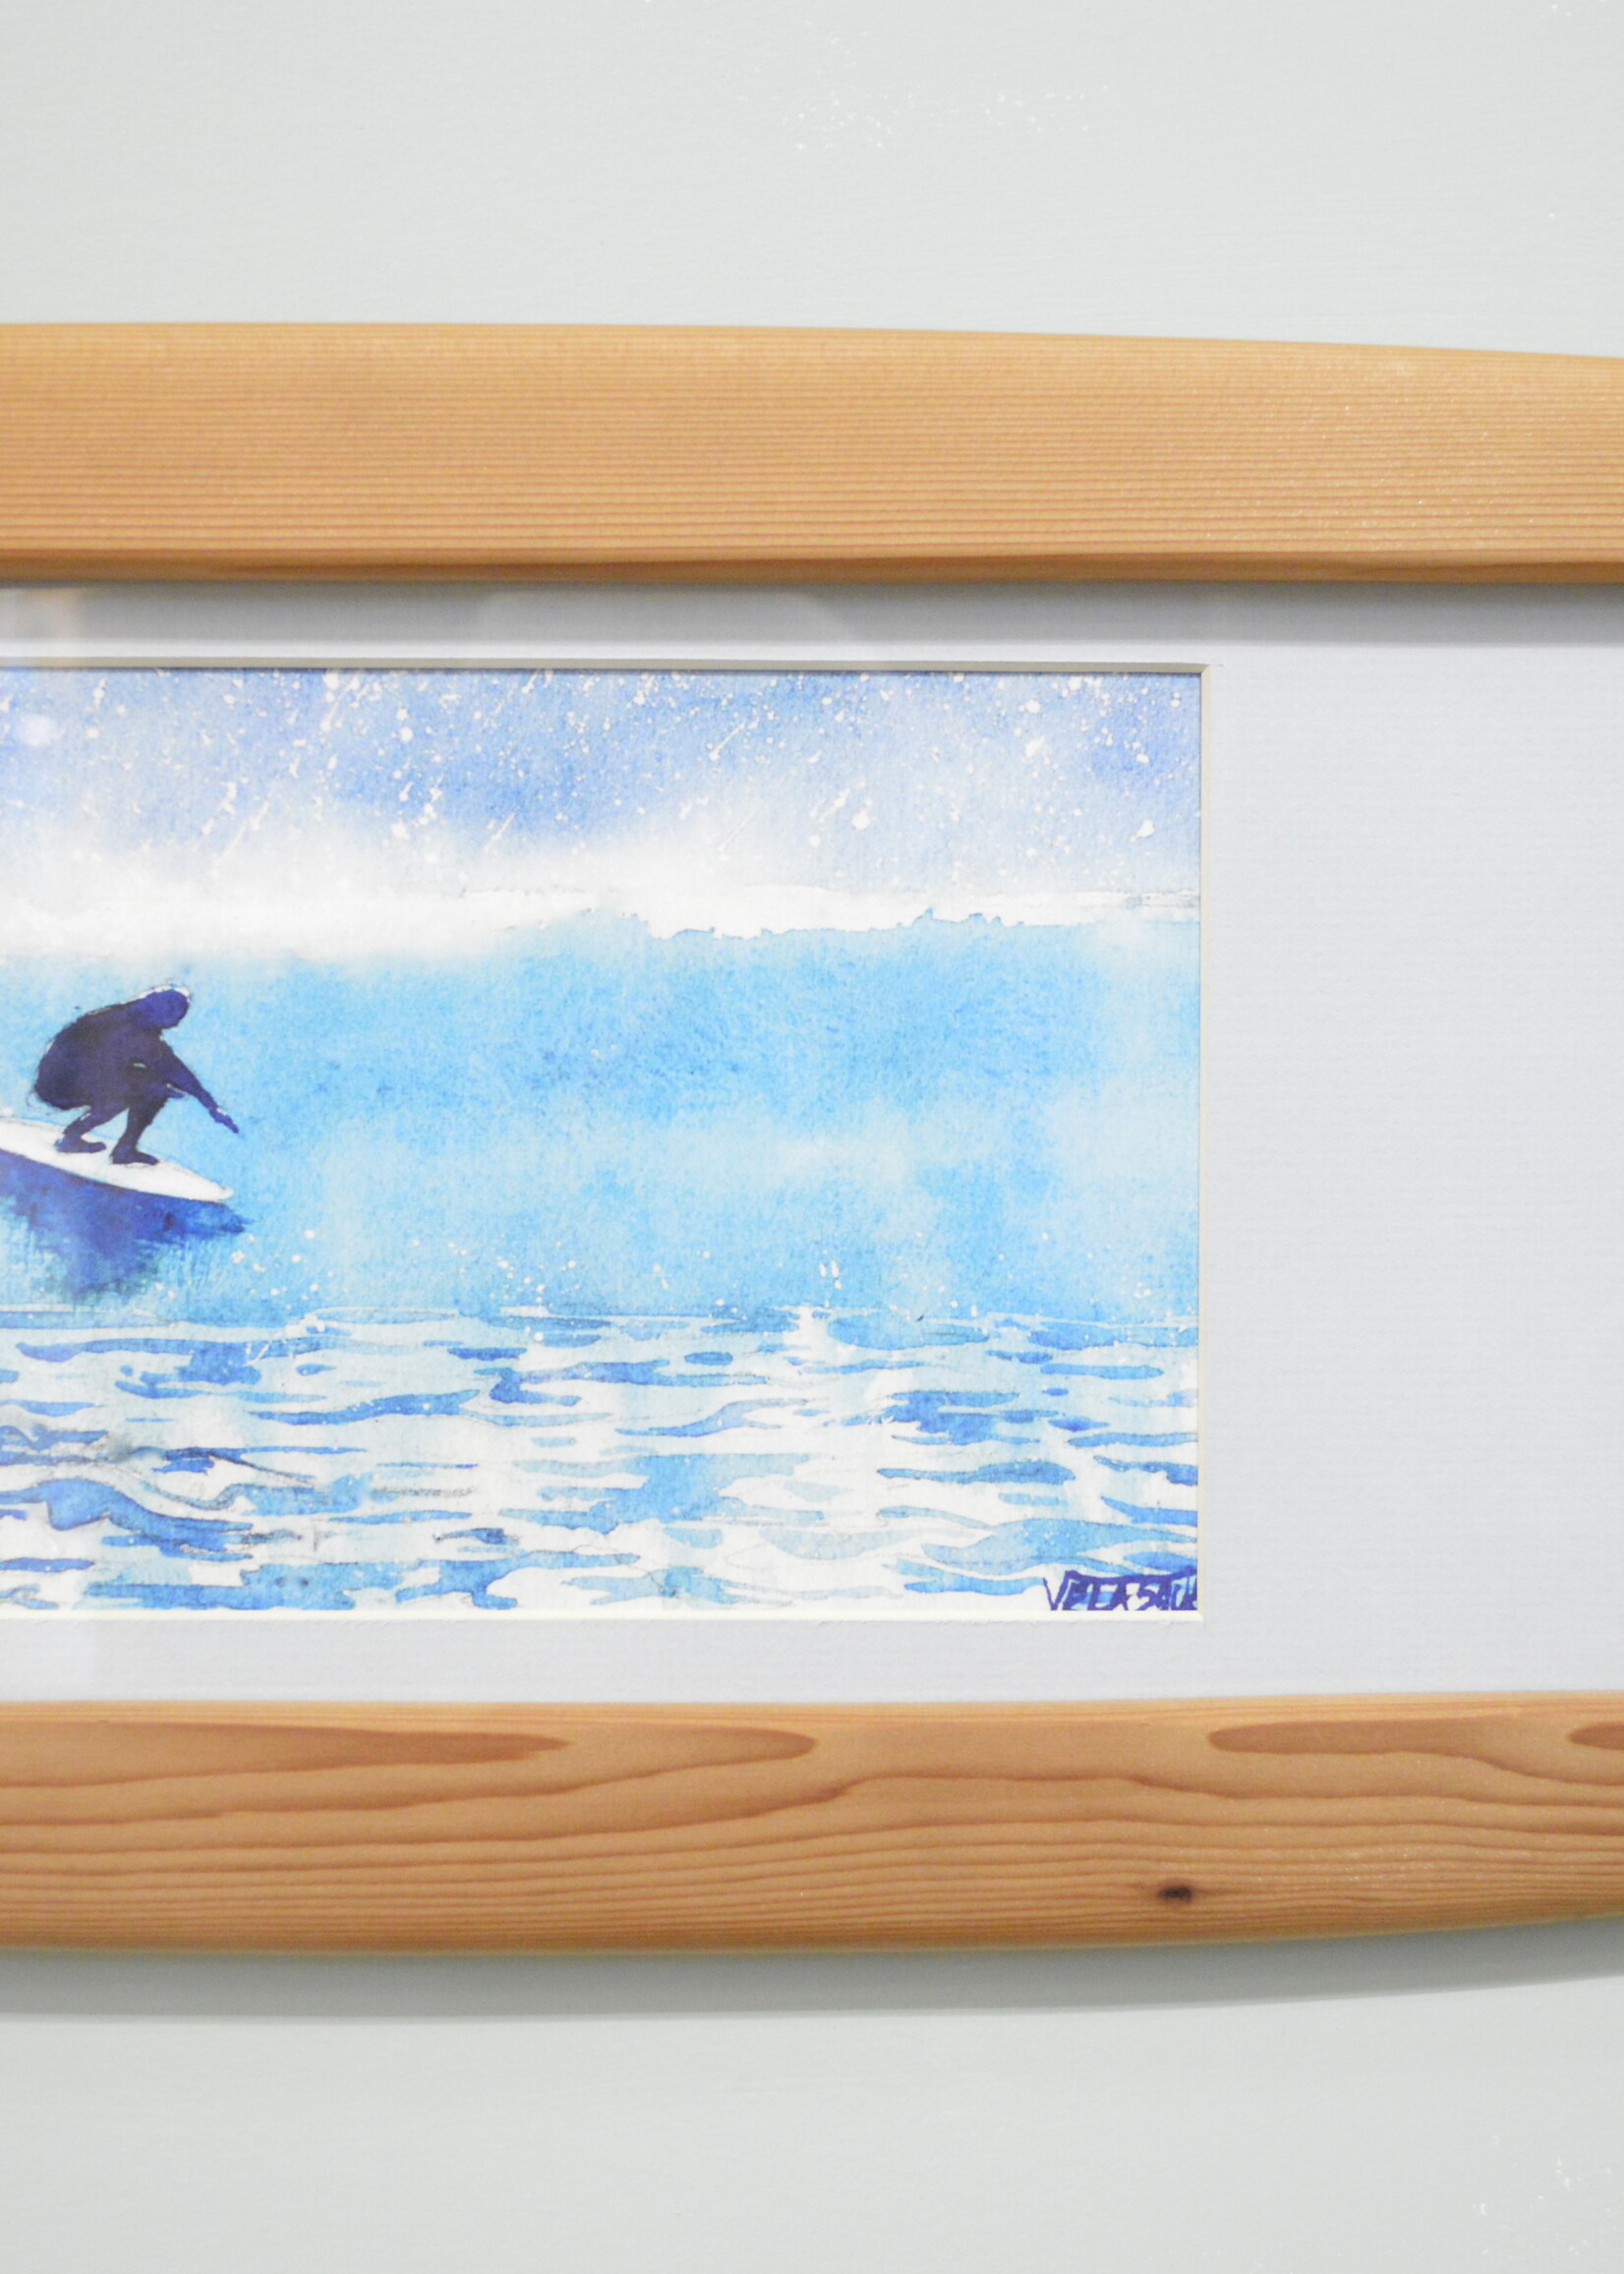 Coast Custom - Surfboard Wall Plaque L 1 print (W)